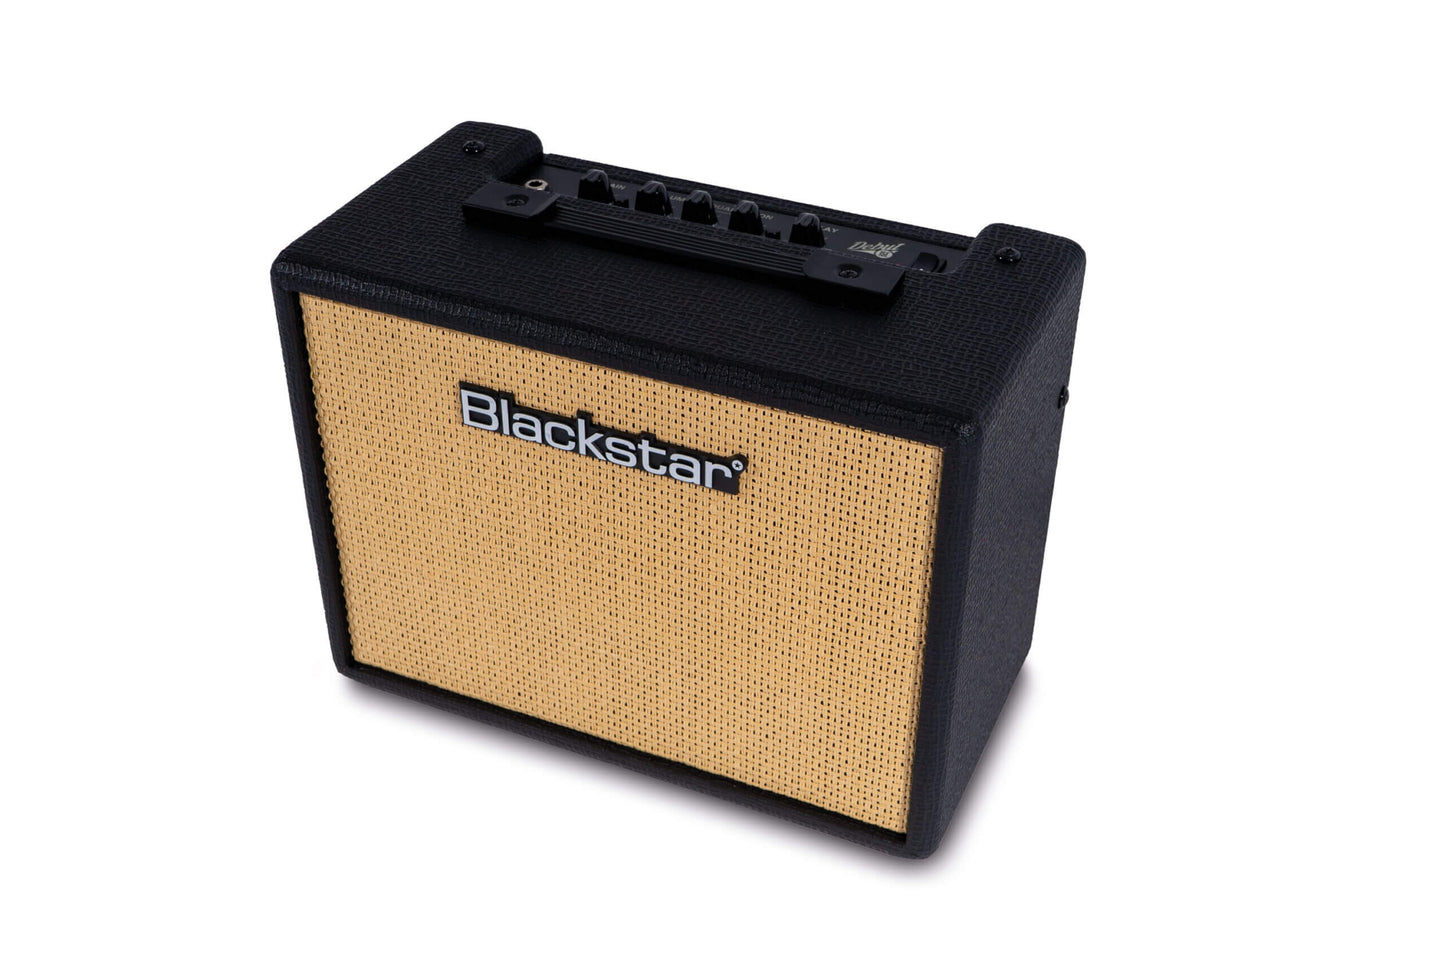 Blackstar Debut 15 Watt Guitar Amplifier Black